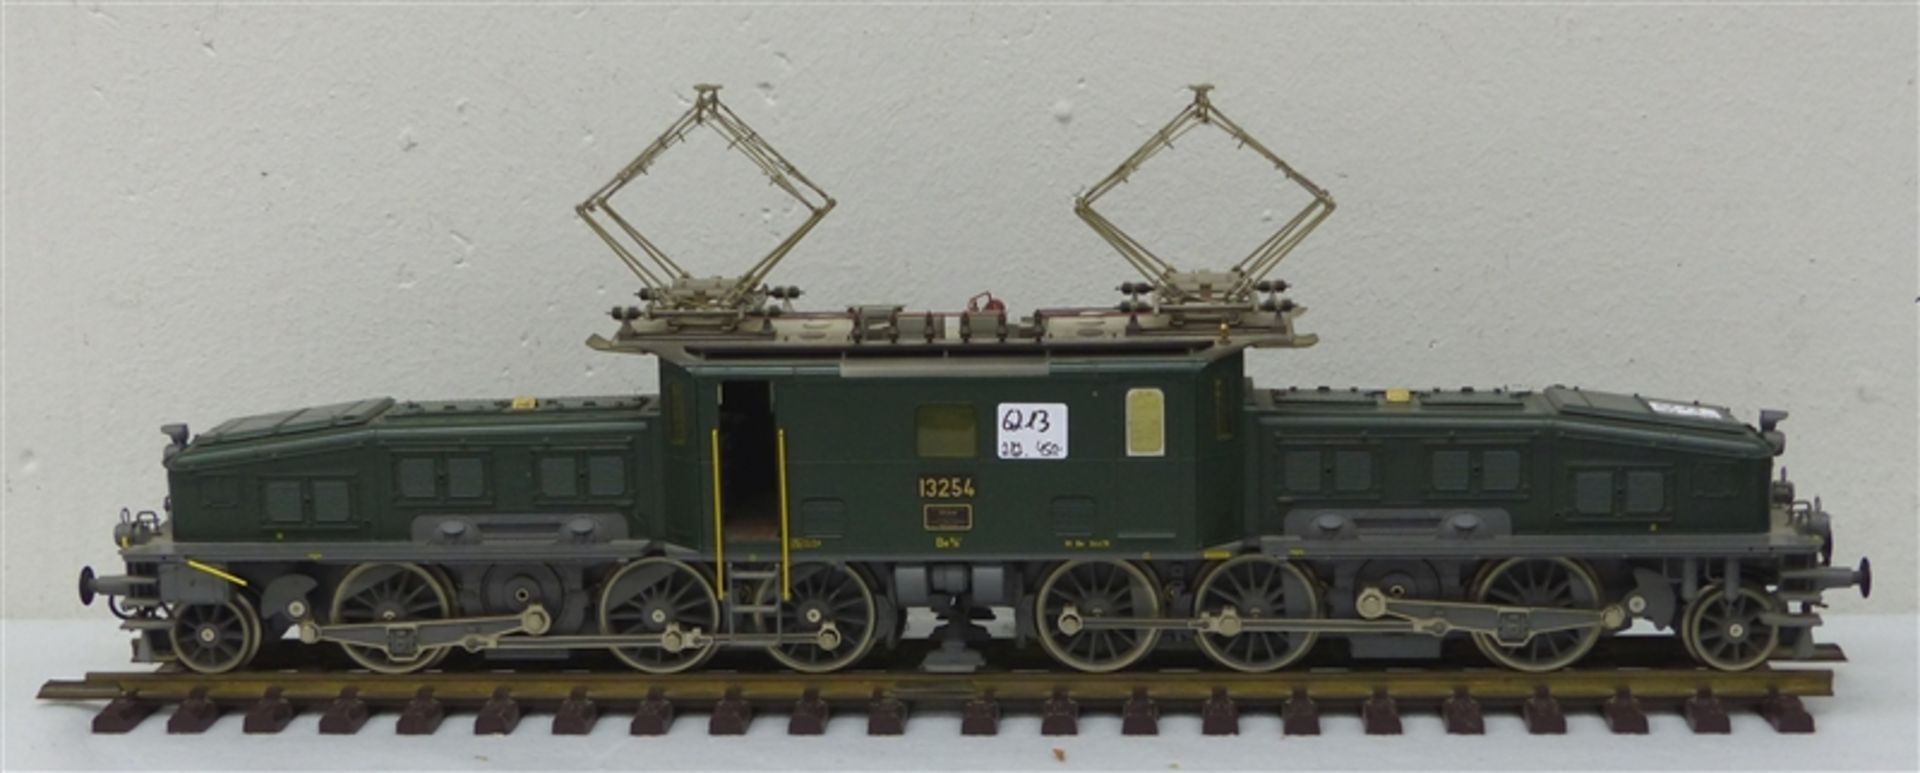 Märklin Lokomotive sogenanntes "Krokodil", 13254, Märklin 5756, um 1960, l 60 cm, h 20 cm, auf